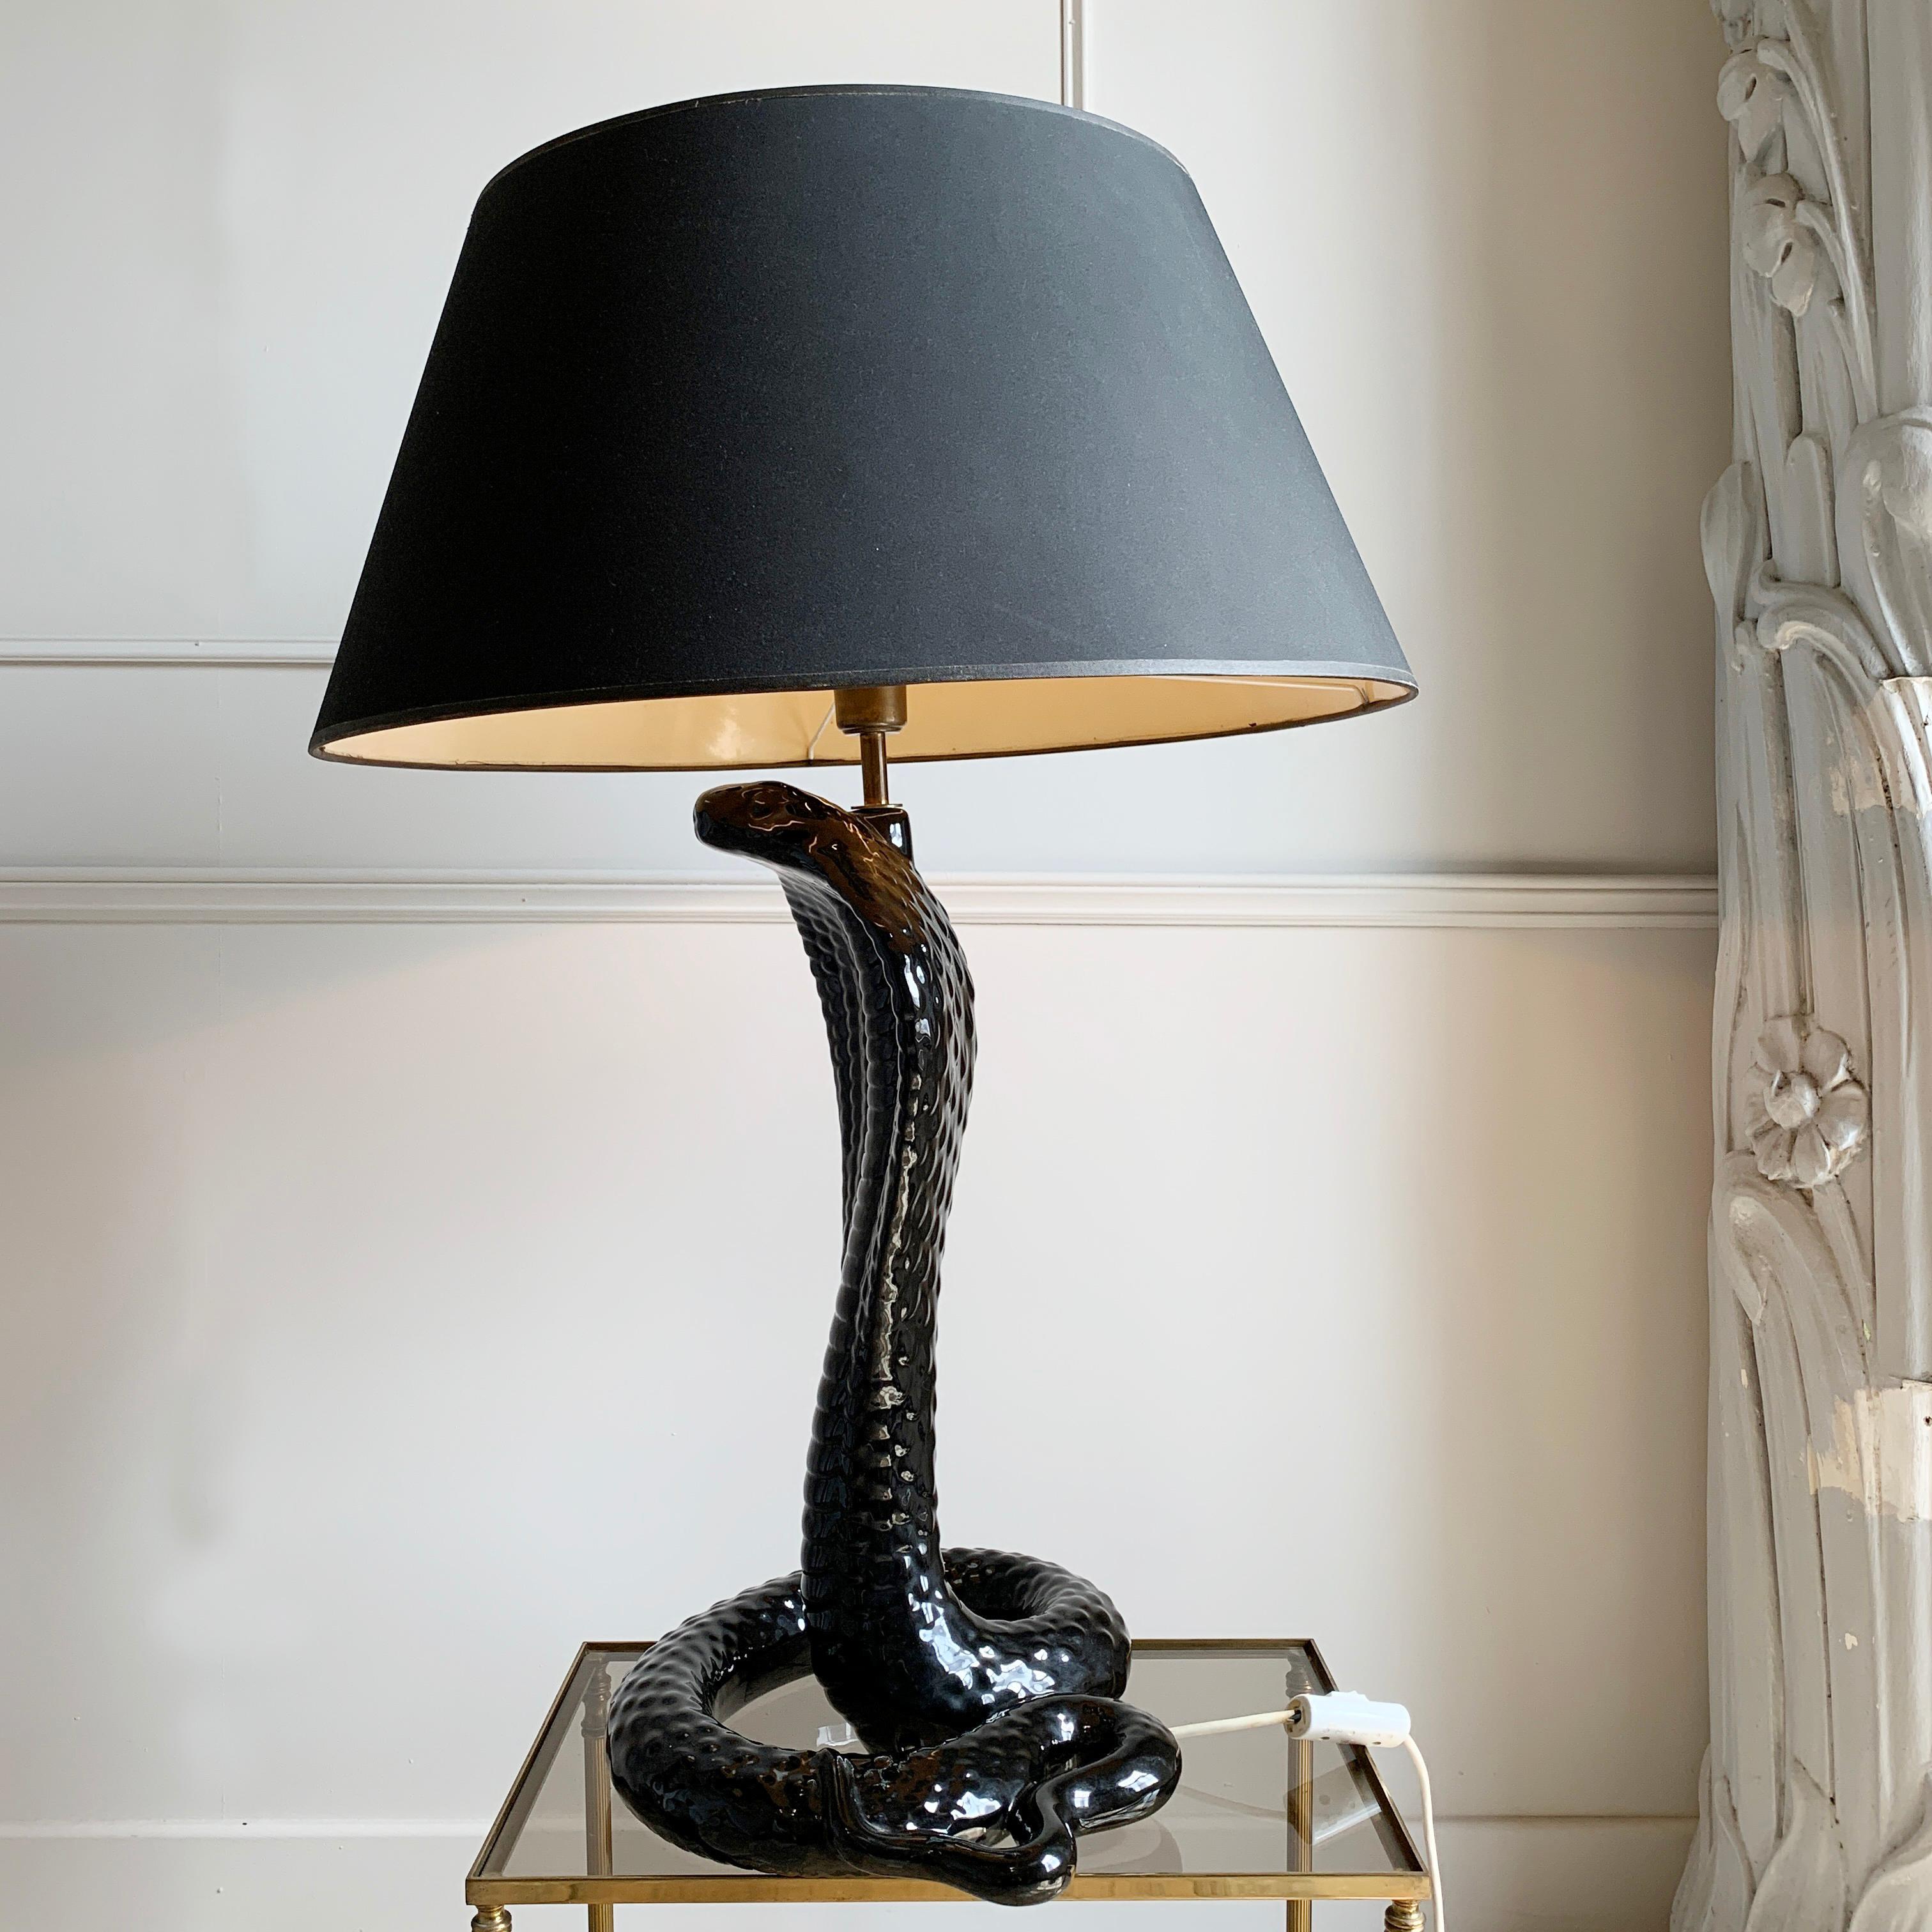 Eine außergewöhnlich seltene Tommaso Barbi Keramik Kobra Lampe, in schwarz. Diese Farbvariante ist die seltenste aller Barbi Cobra's und kommt nur sehr selten auf den Markt. Dieses Stück ist in ausgezeichnetem Zustand und hat noch den originalen